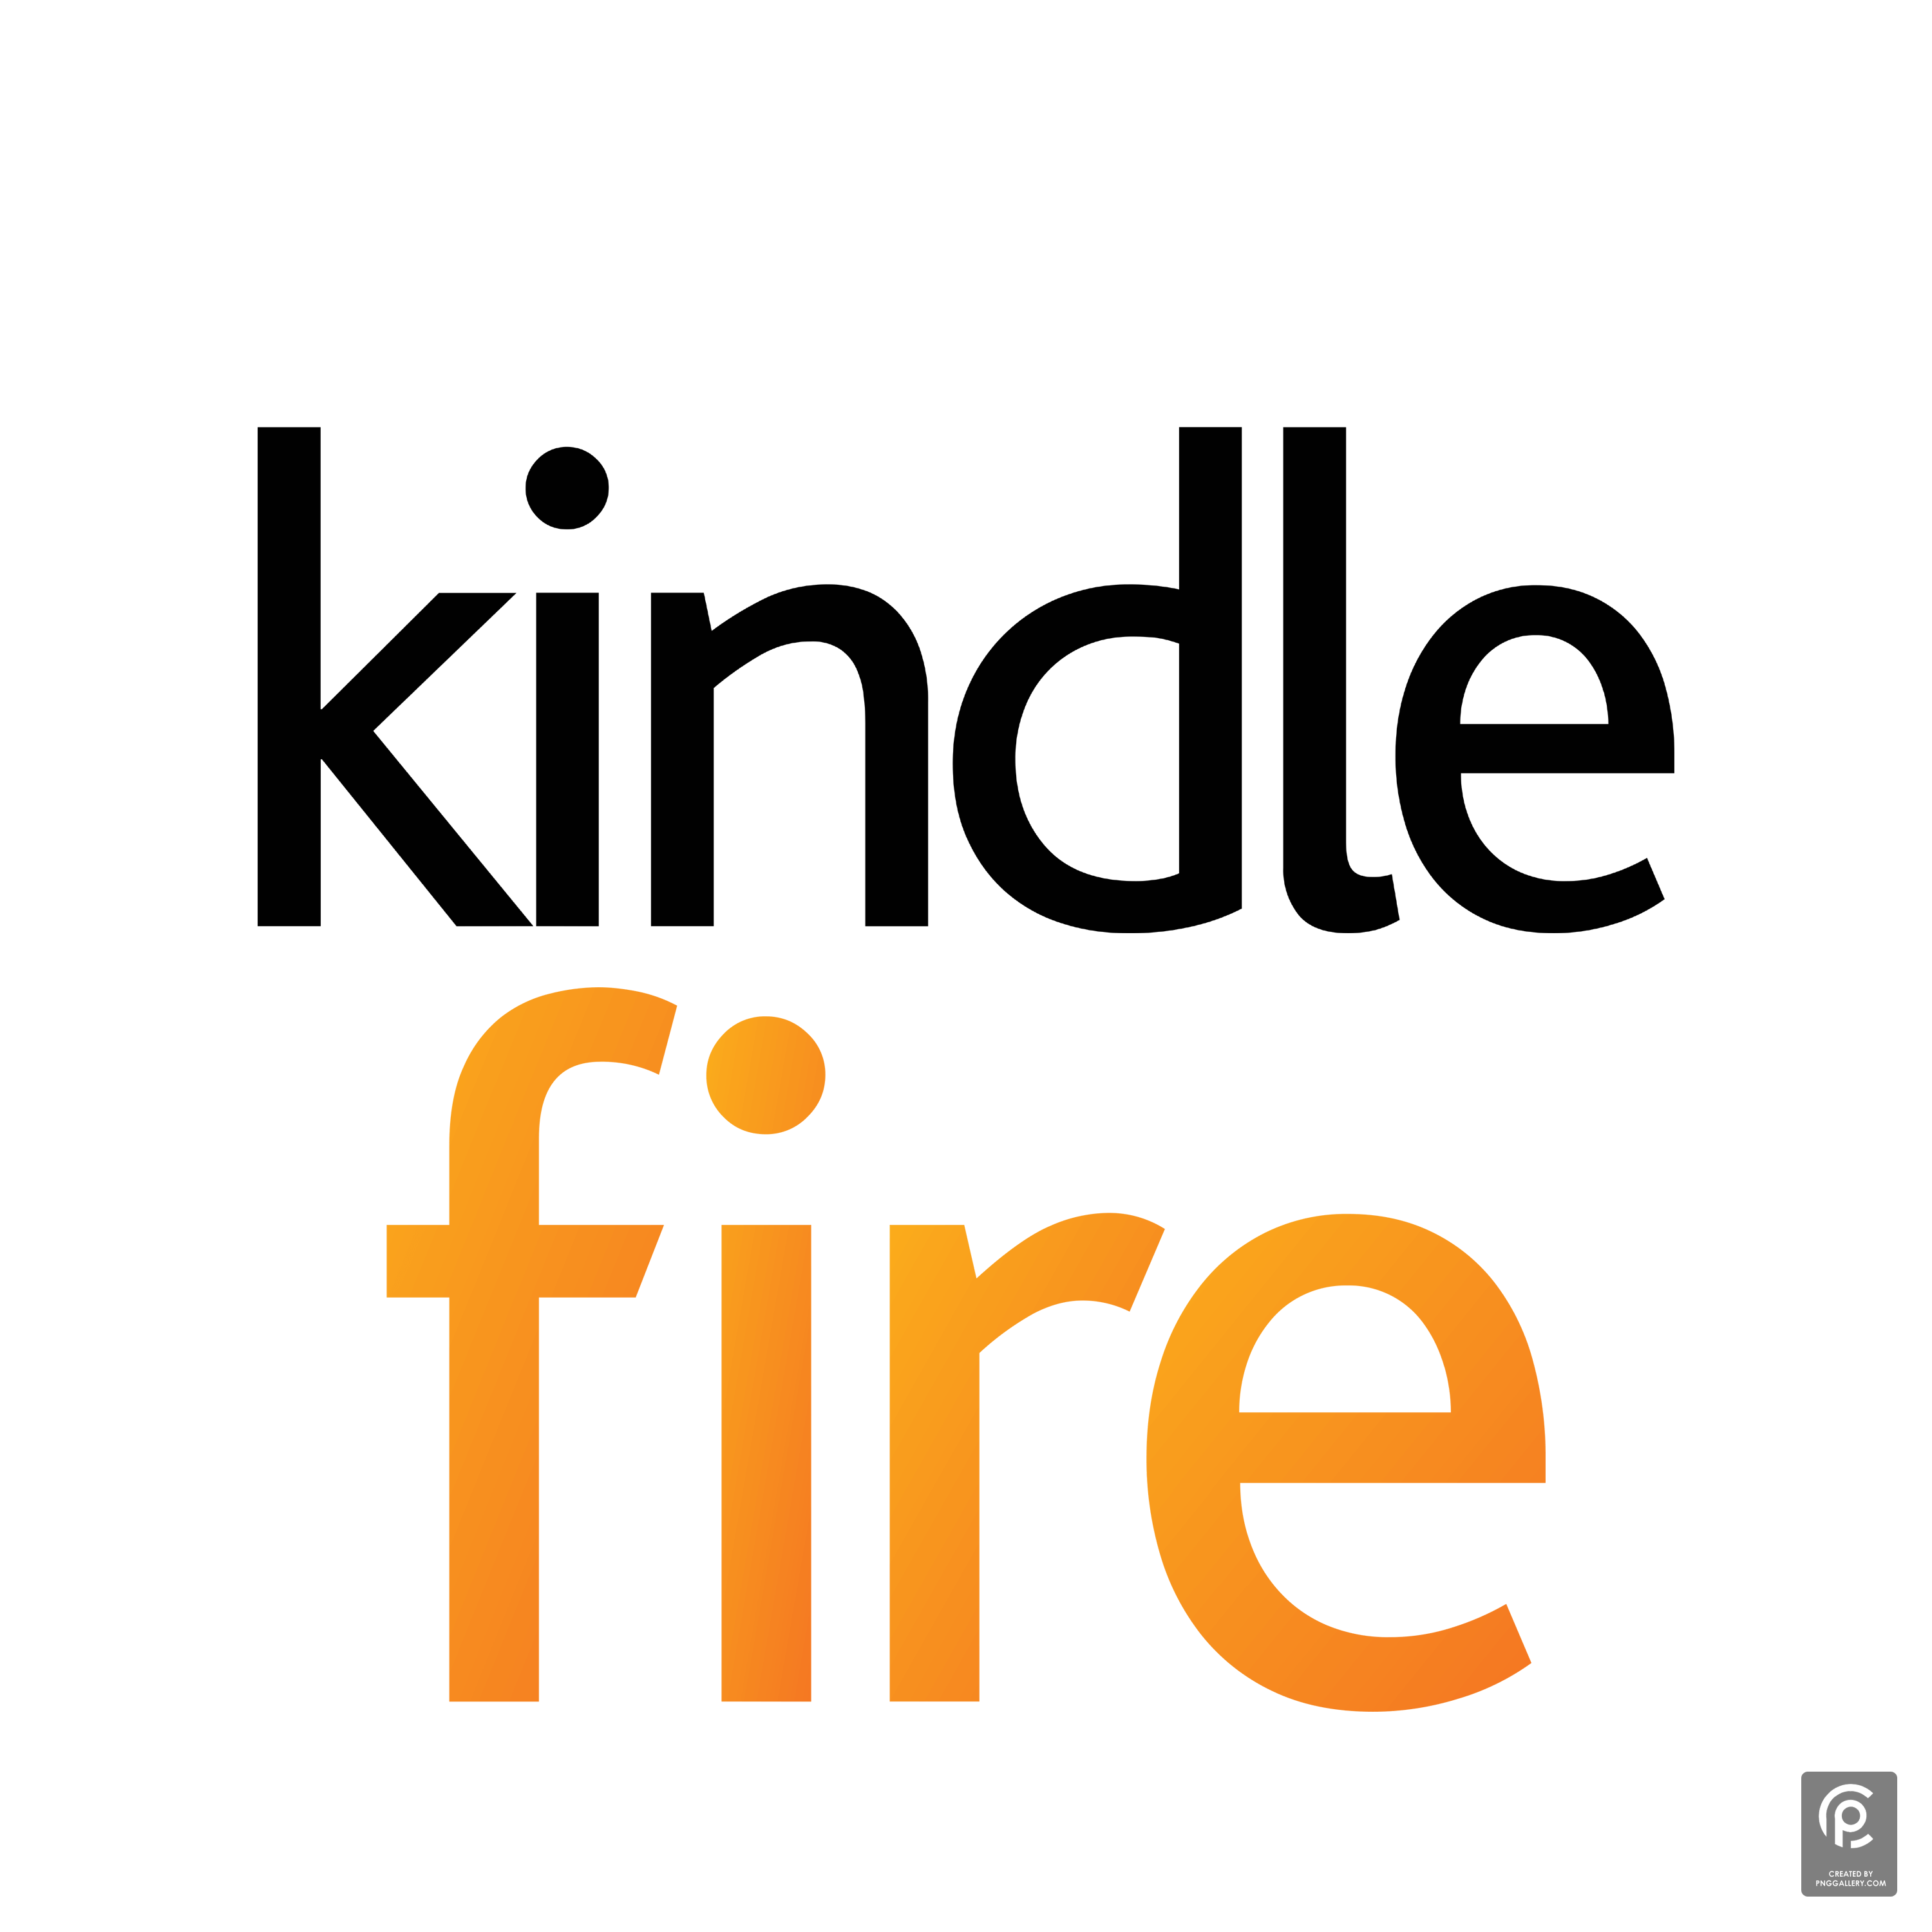 Kindle Fire Logo Transparent Picture